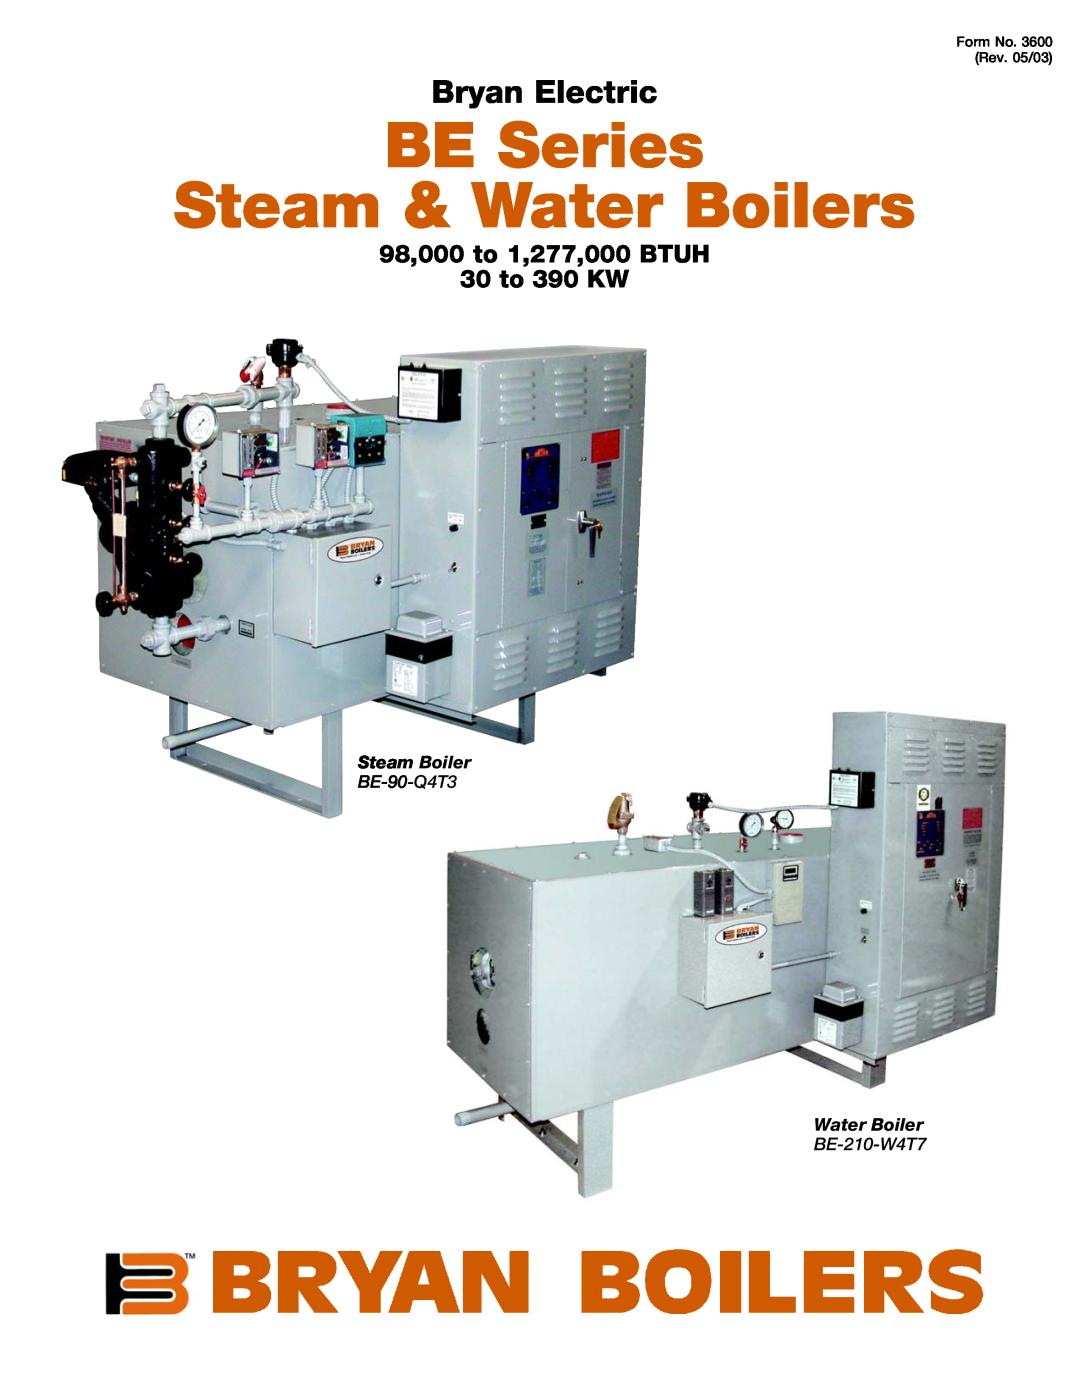 Bryan Boilers BE-90-Q4T3 manual Steam Boiler, BE-210-W4T7, BE Series Steam & Water Boilers, Bryan Electric 